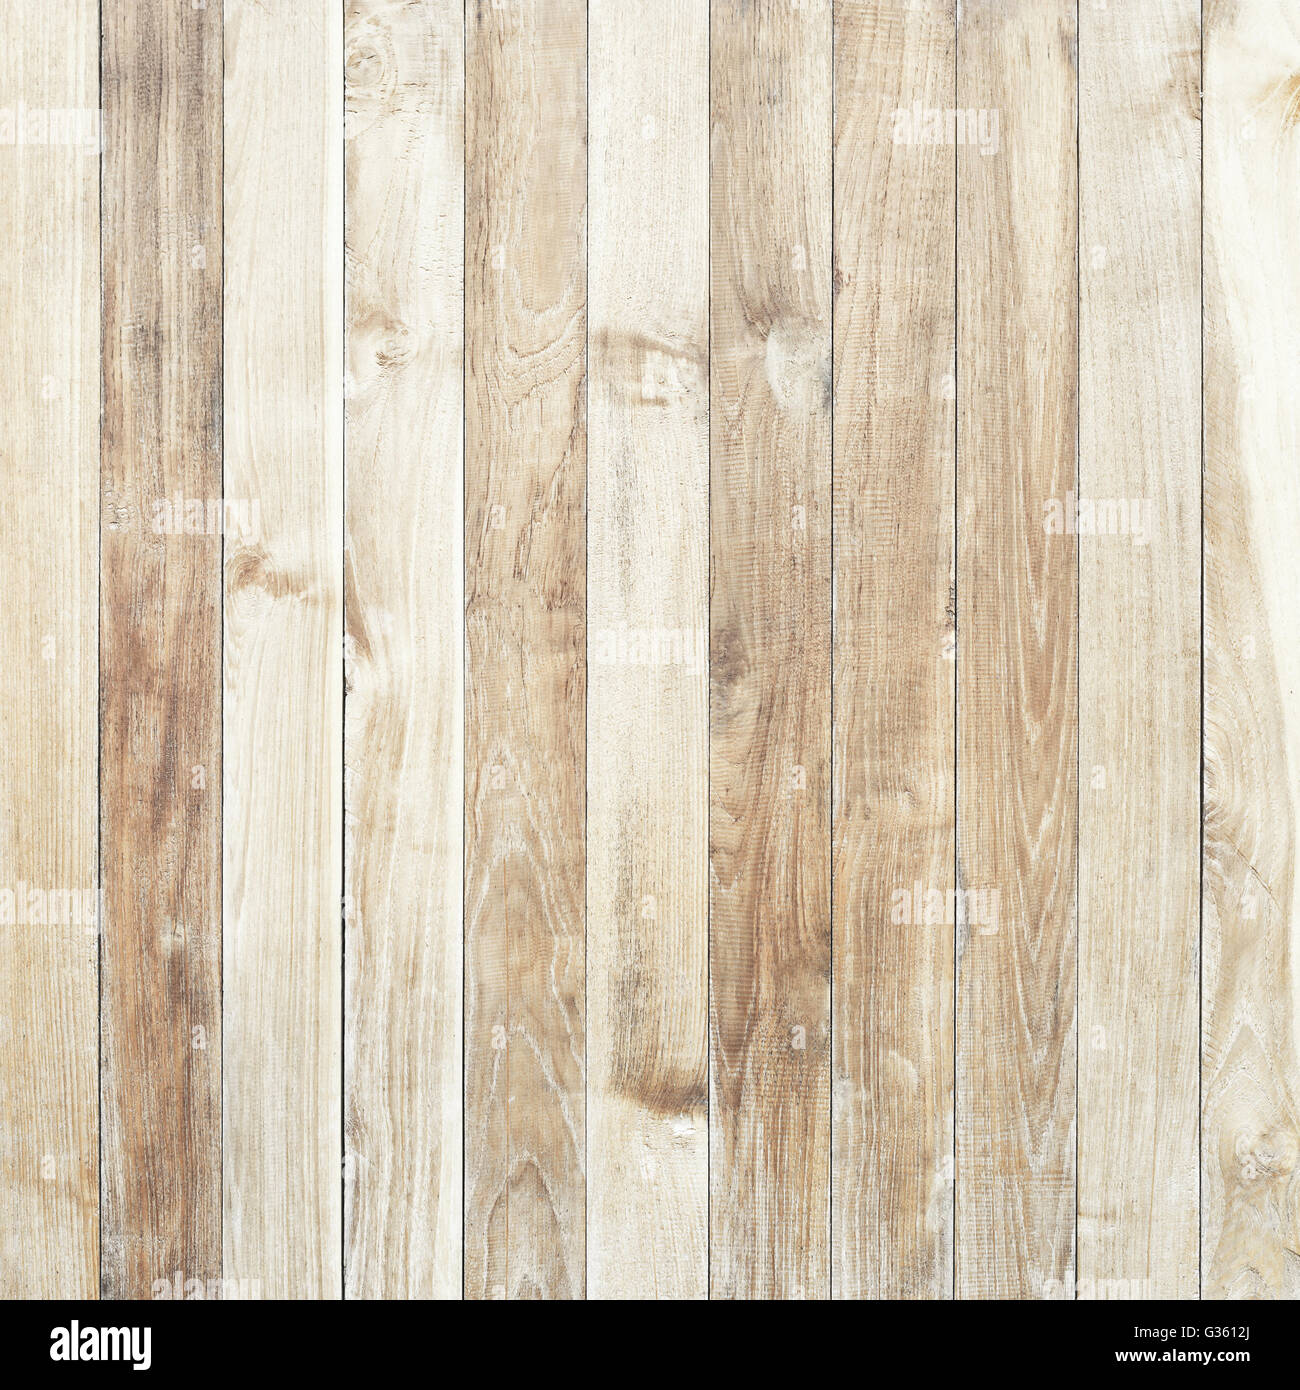 Nền gỗ trắng độ phân giải cao: Sự tinh tế và sang trọng luôn được phản ánh qua một nền gỗ trắng hoàn hảo. Hãy xem qua hình ảnh nền gỗ trắng độ phân giải cao, nơi mà sắc trắng ngà của nó sẽ tạo ra một cảm giác rất hiện đại và thanh lịch. Với độ sáng trung bình, nền gỗ này sẽ làm nổi bật hình ảnh của bạn trong mọi tình huống.